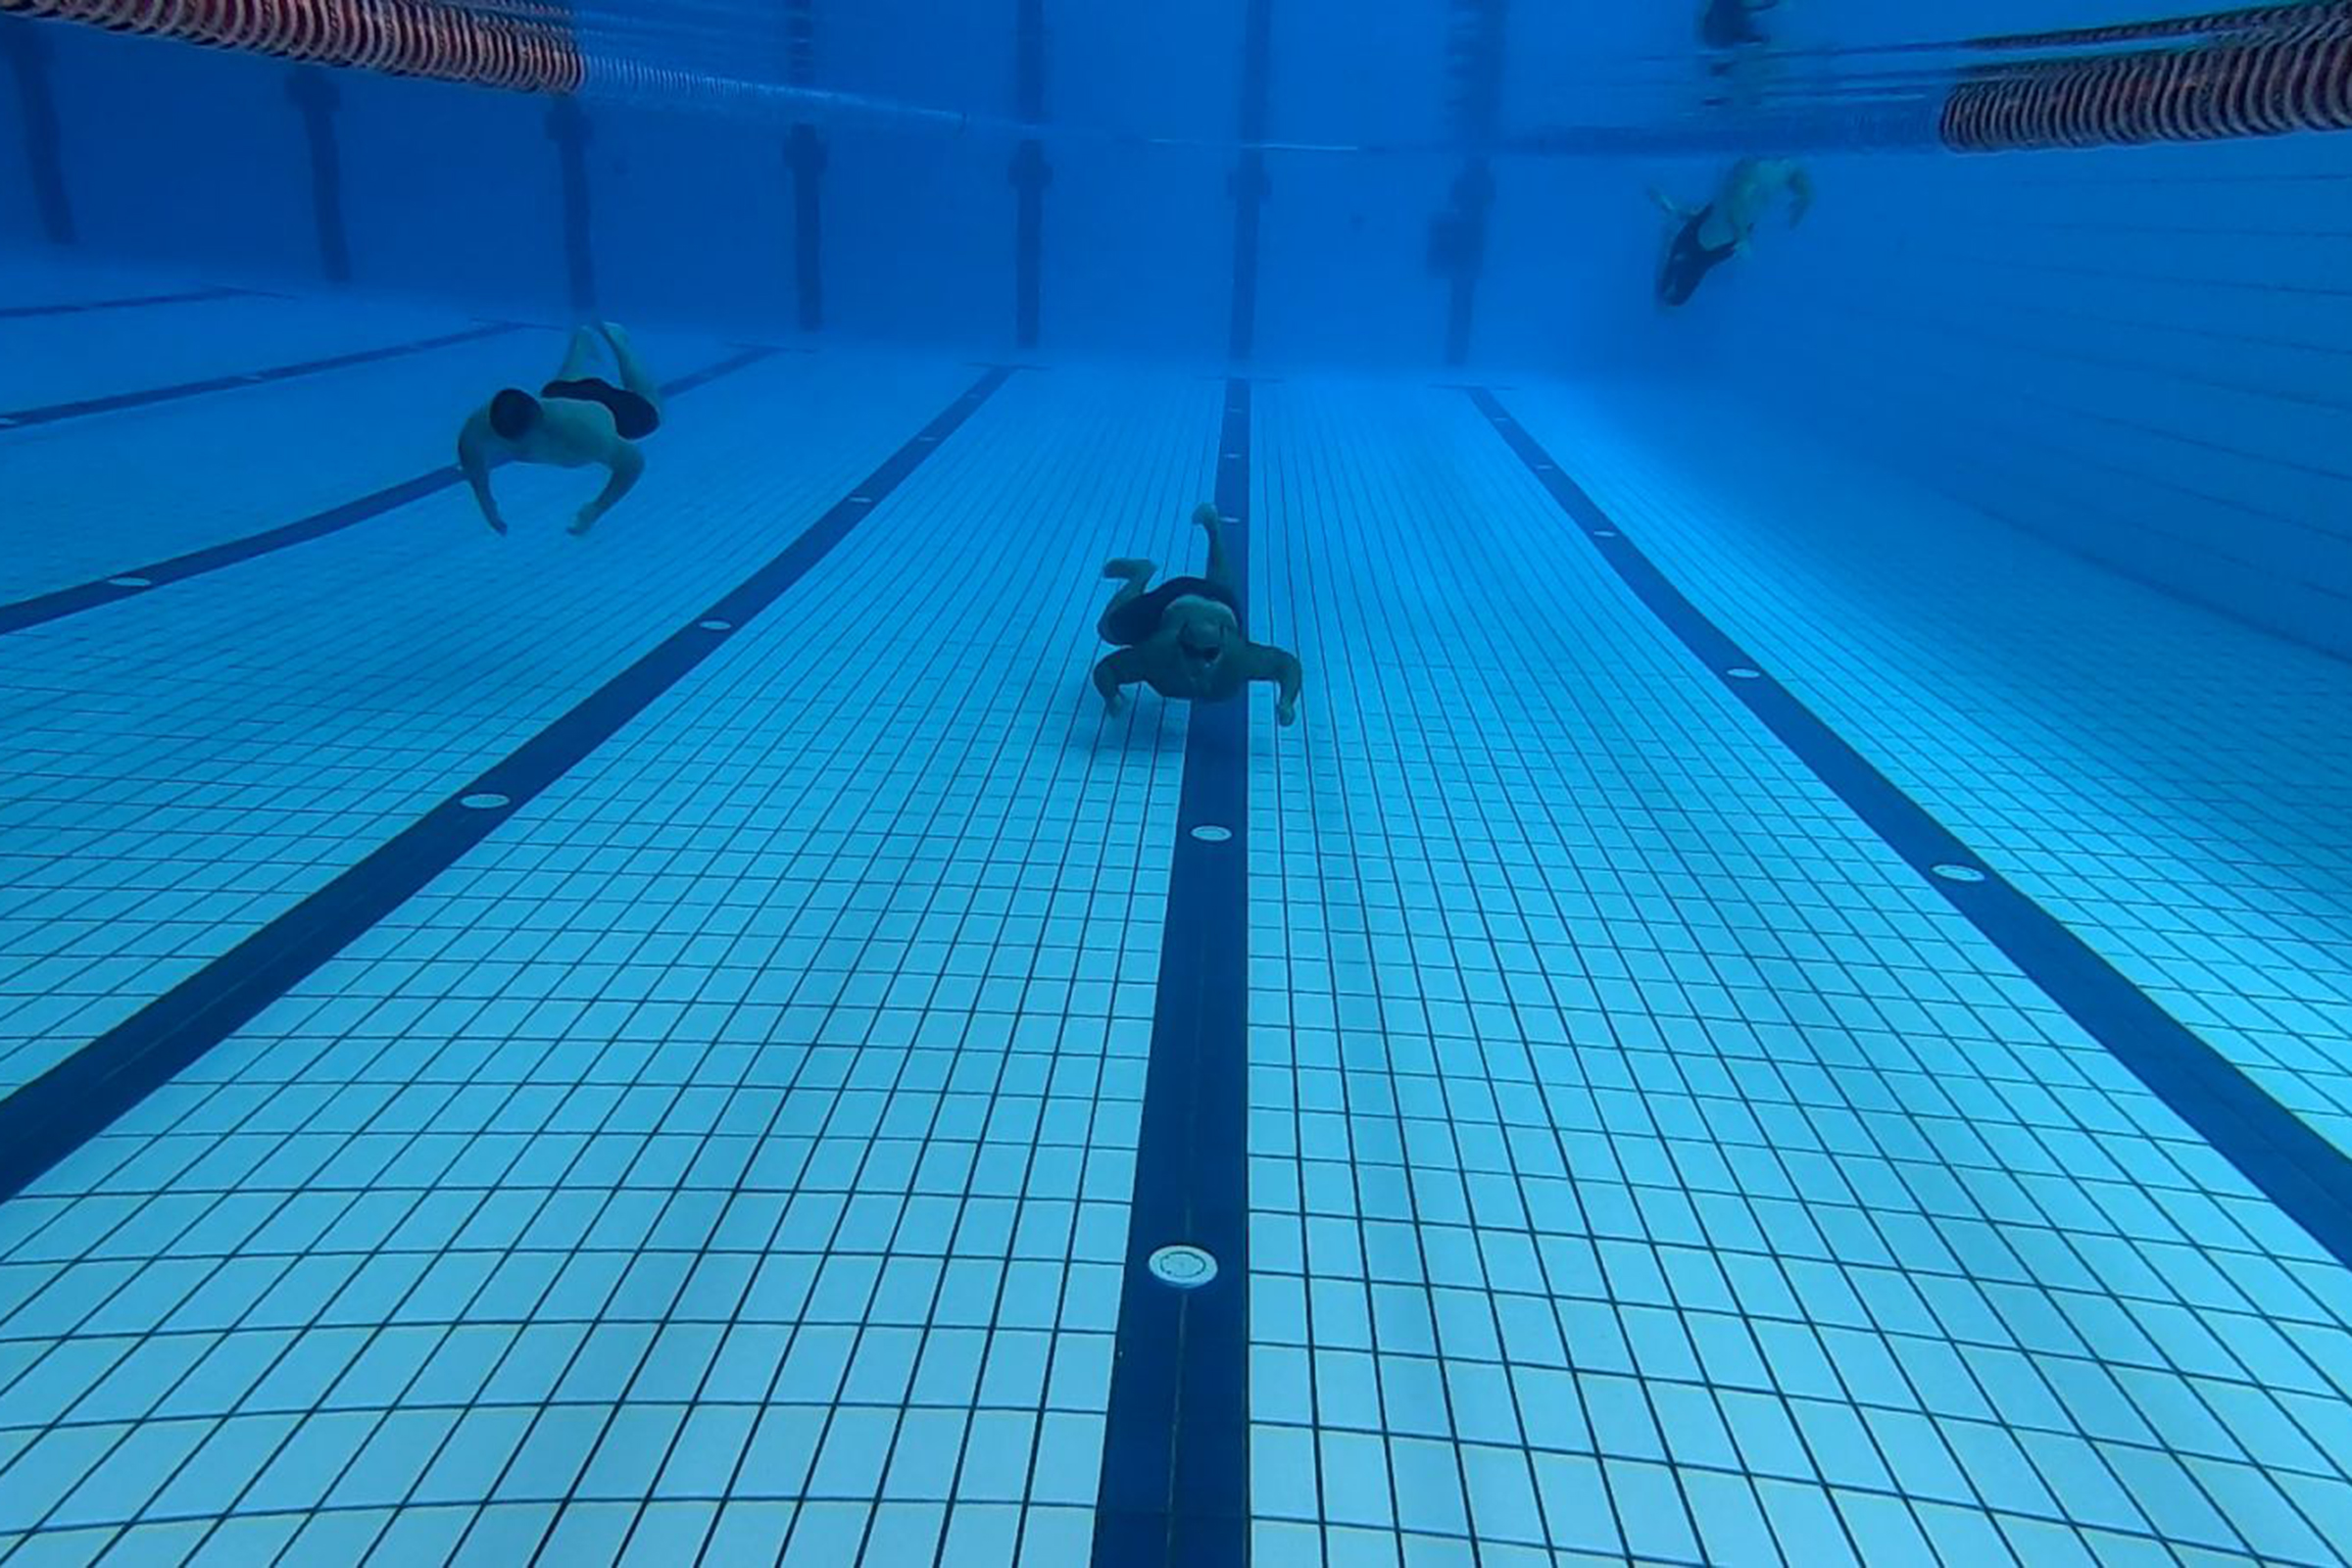 2. Oklopno-mehanizirana bojna Pume provela natjecanje u plivanju